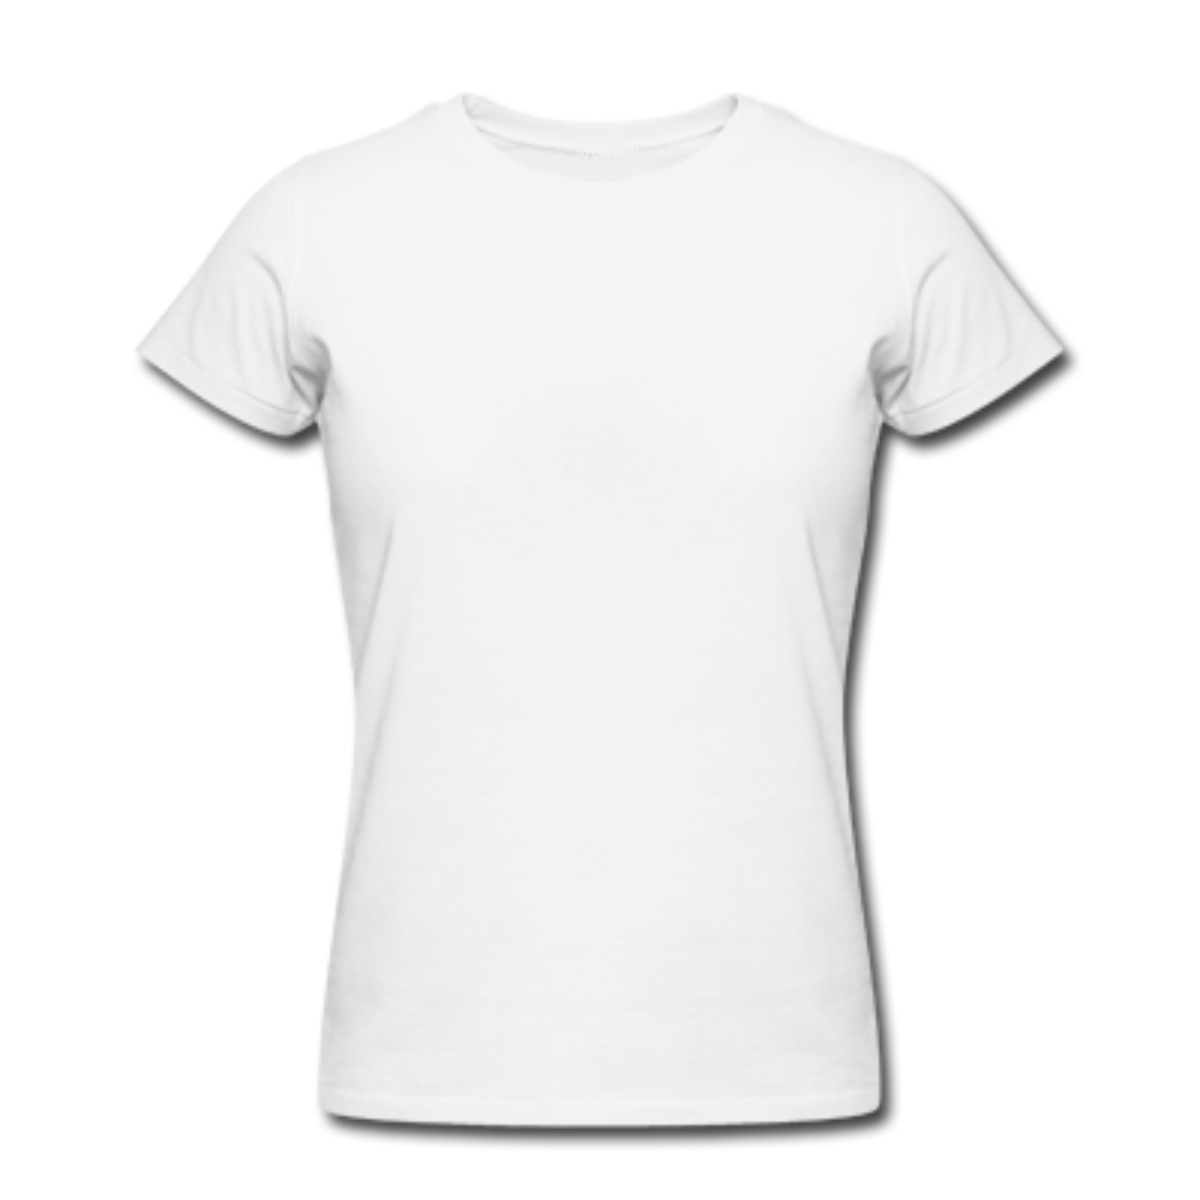 Women's Round Neck Cotton T-Shirt - White